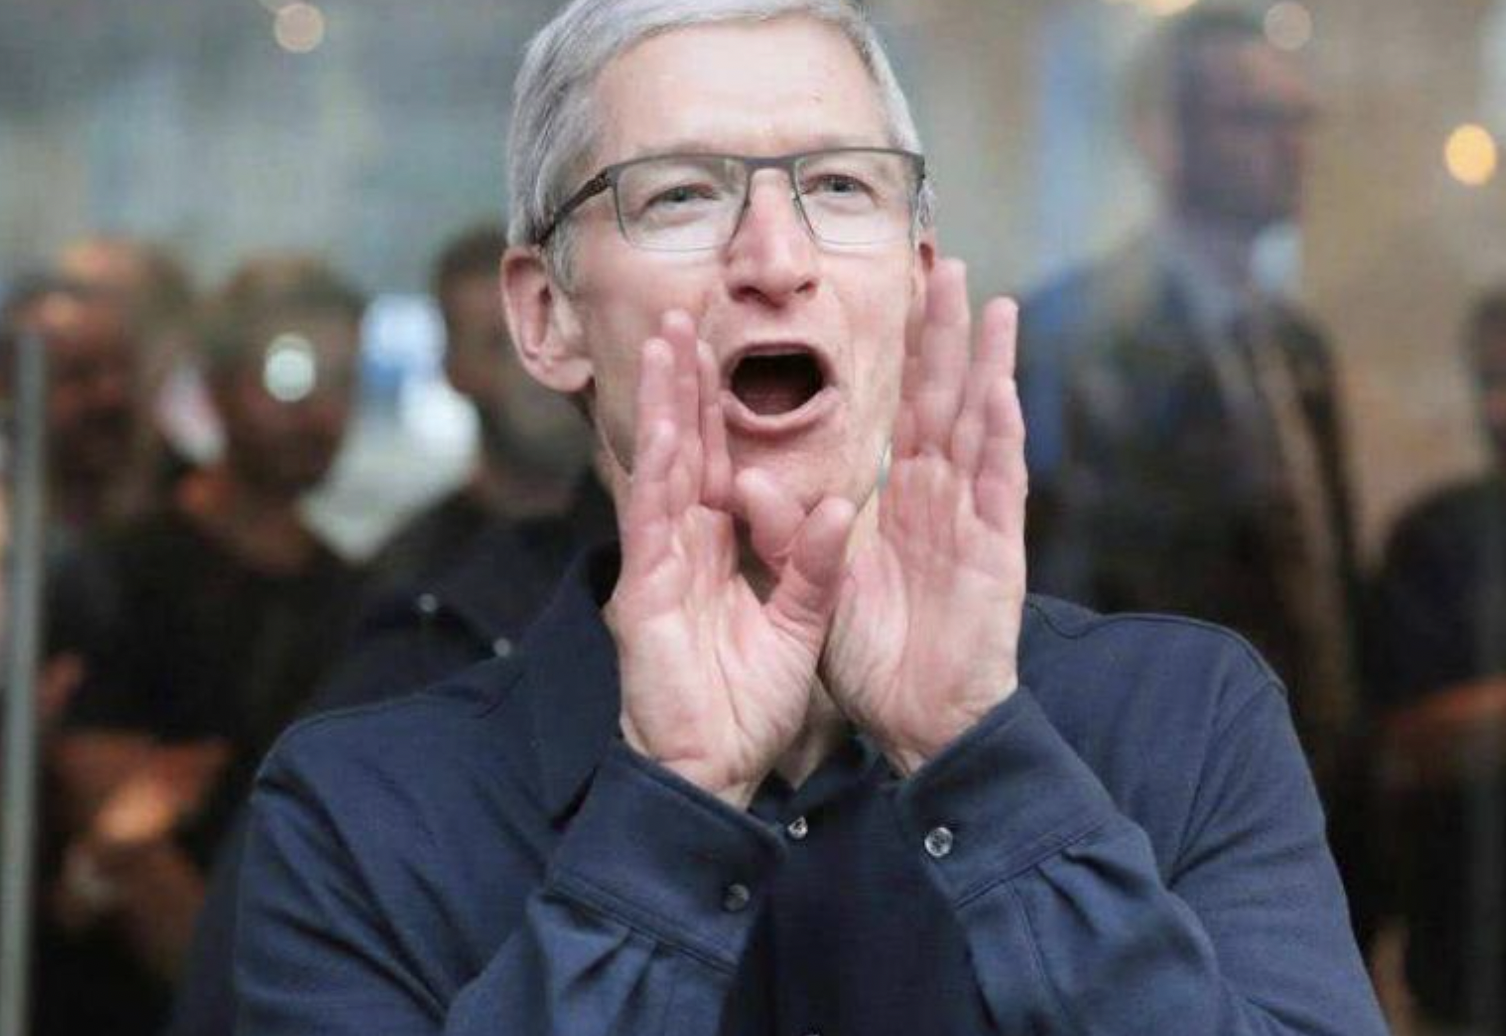 iPhone|iPhone13大卖之后，苹果又悄悄上架廉价iPhone，果粉：不买也罢